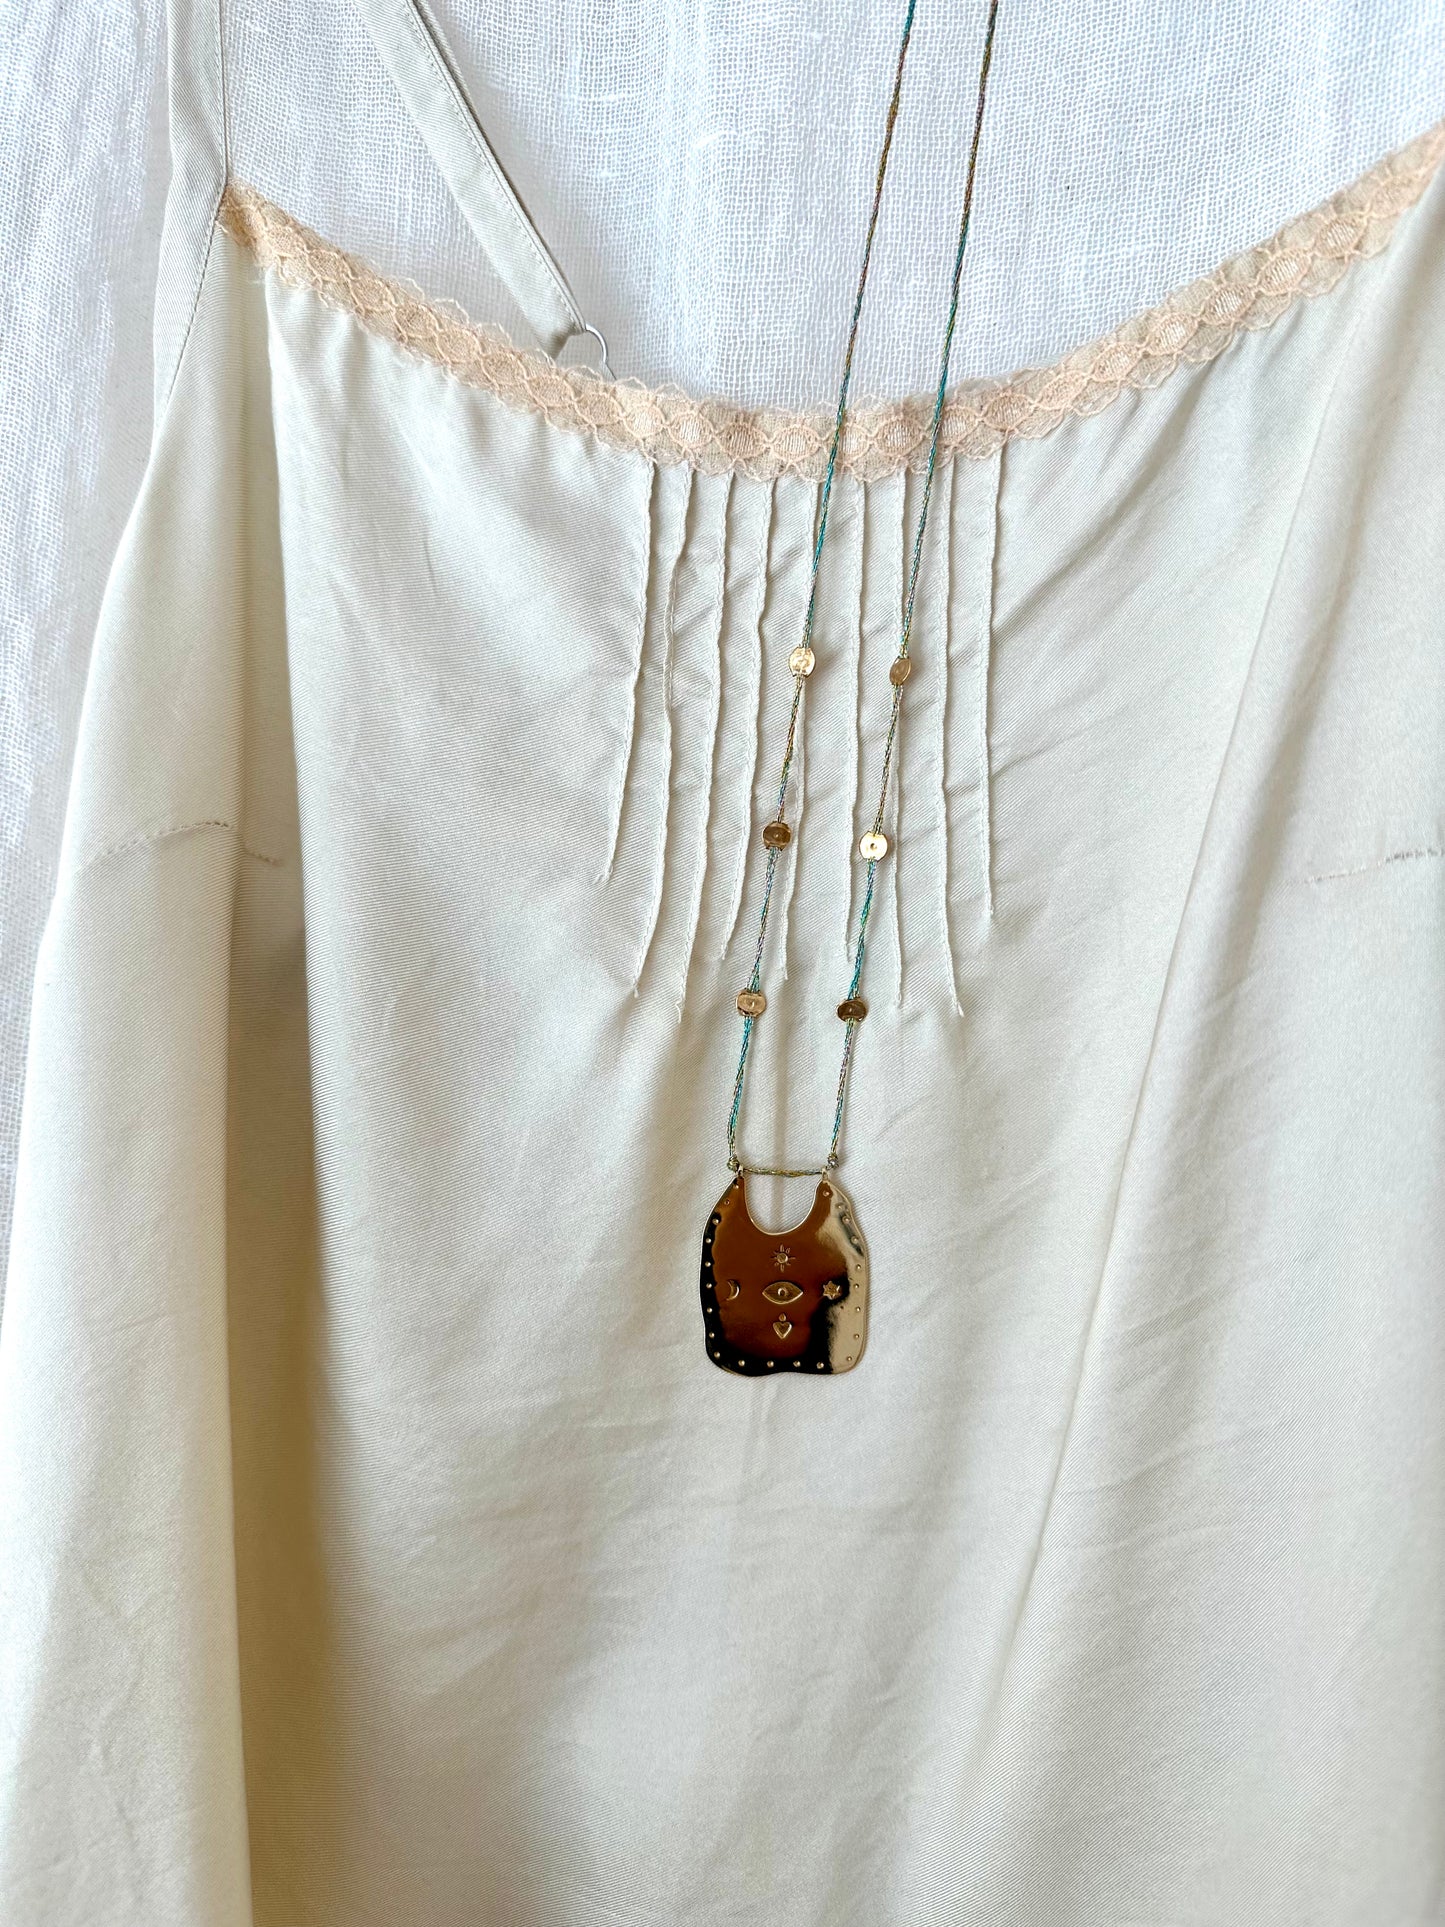 iwona ludyga sagrado metallic string talisman necklace